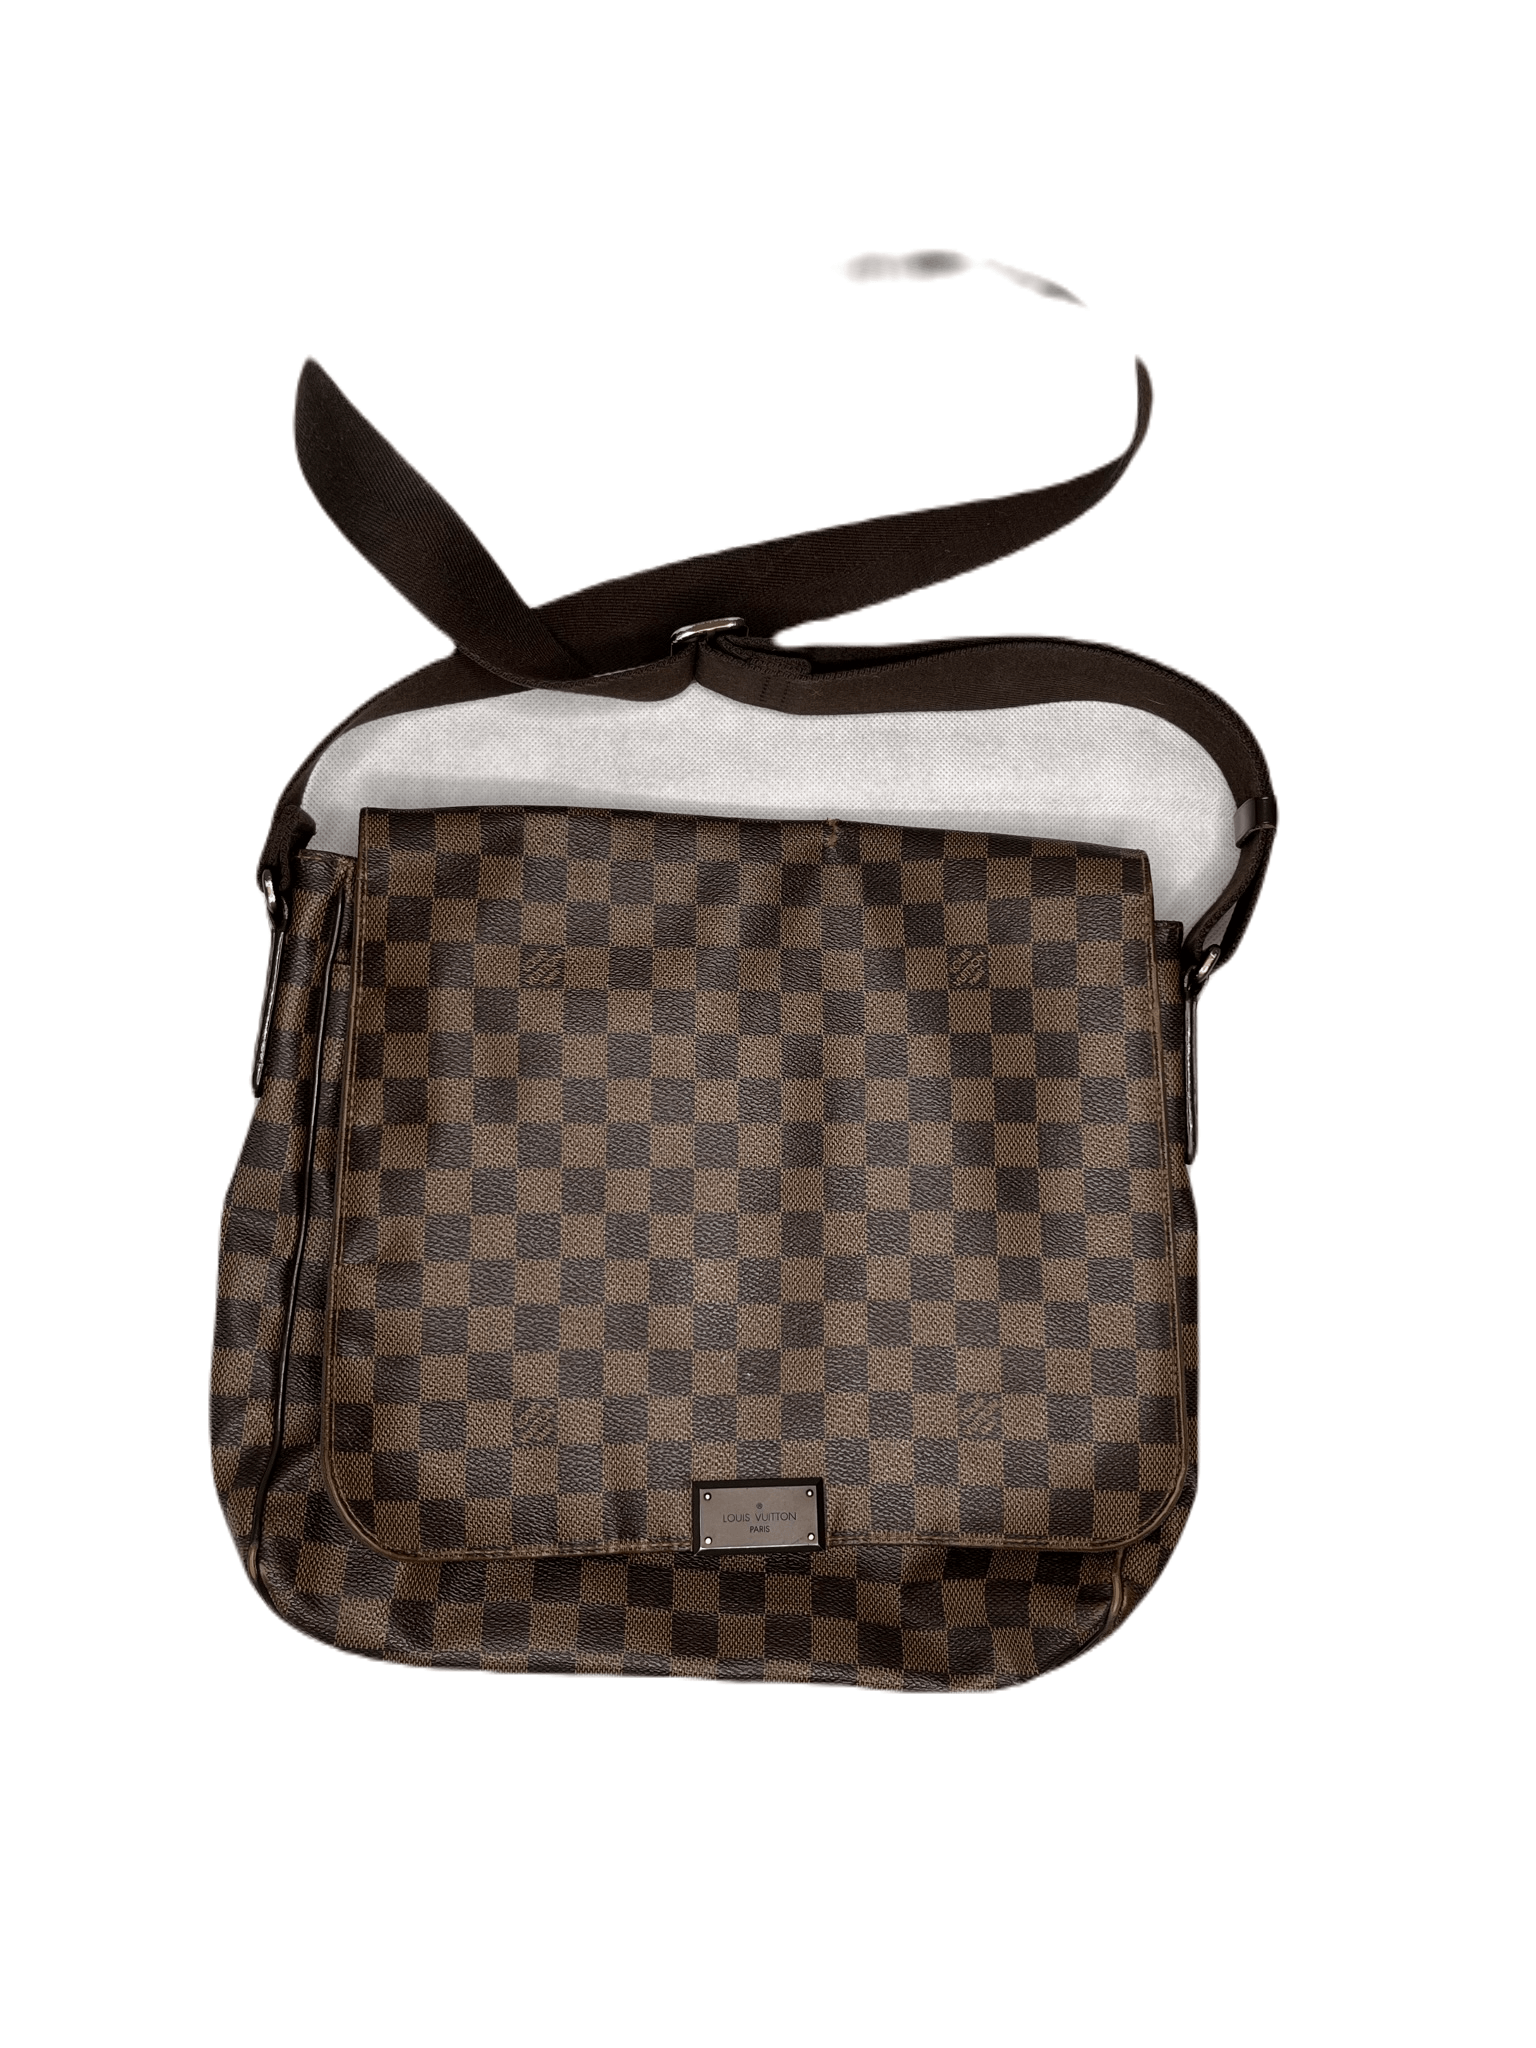 Shop Louis Vuitton DAMIER INFINI Studio messenger (N50007) by parigina